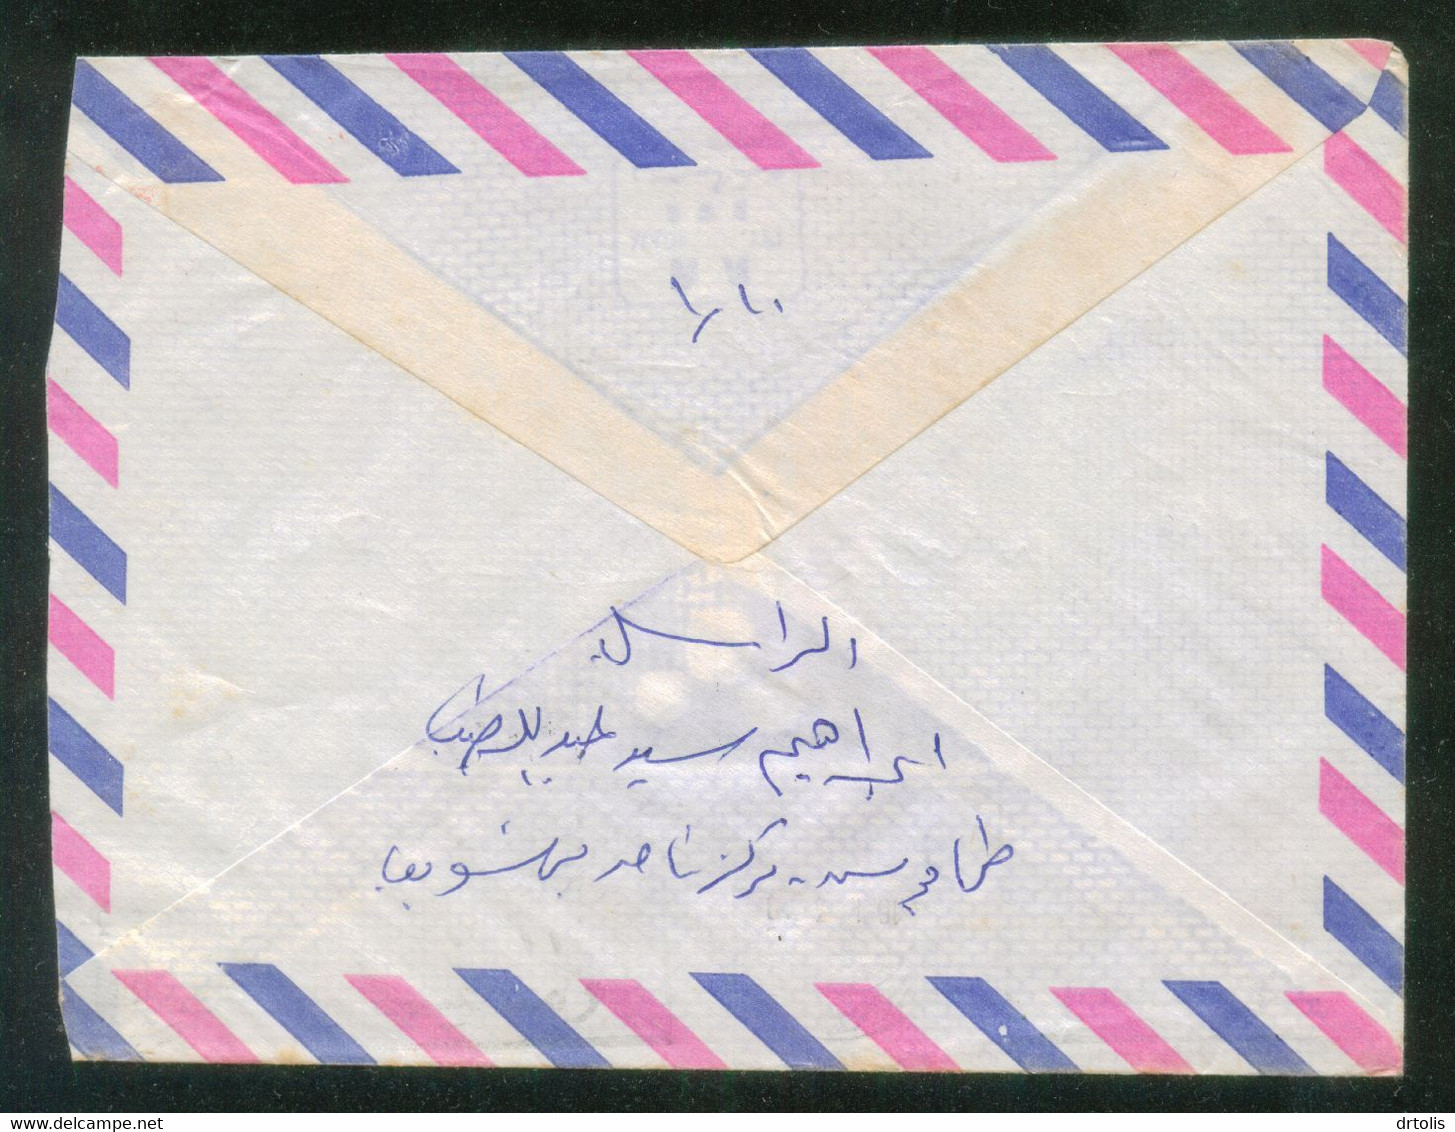 EGYPT / METER LETTER / MOKBIL ( BANI SWIF )  TO CAIRO - Lettres & Documents